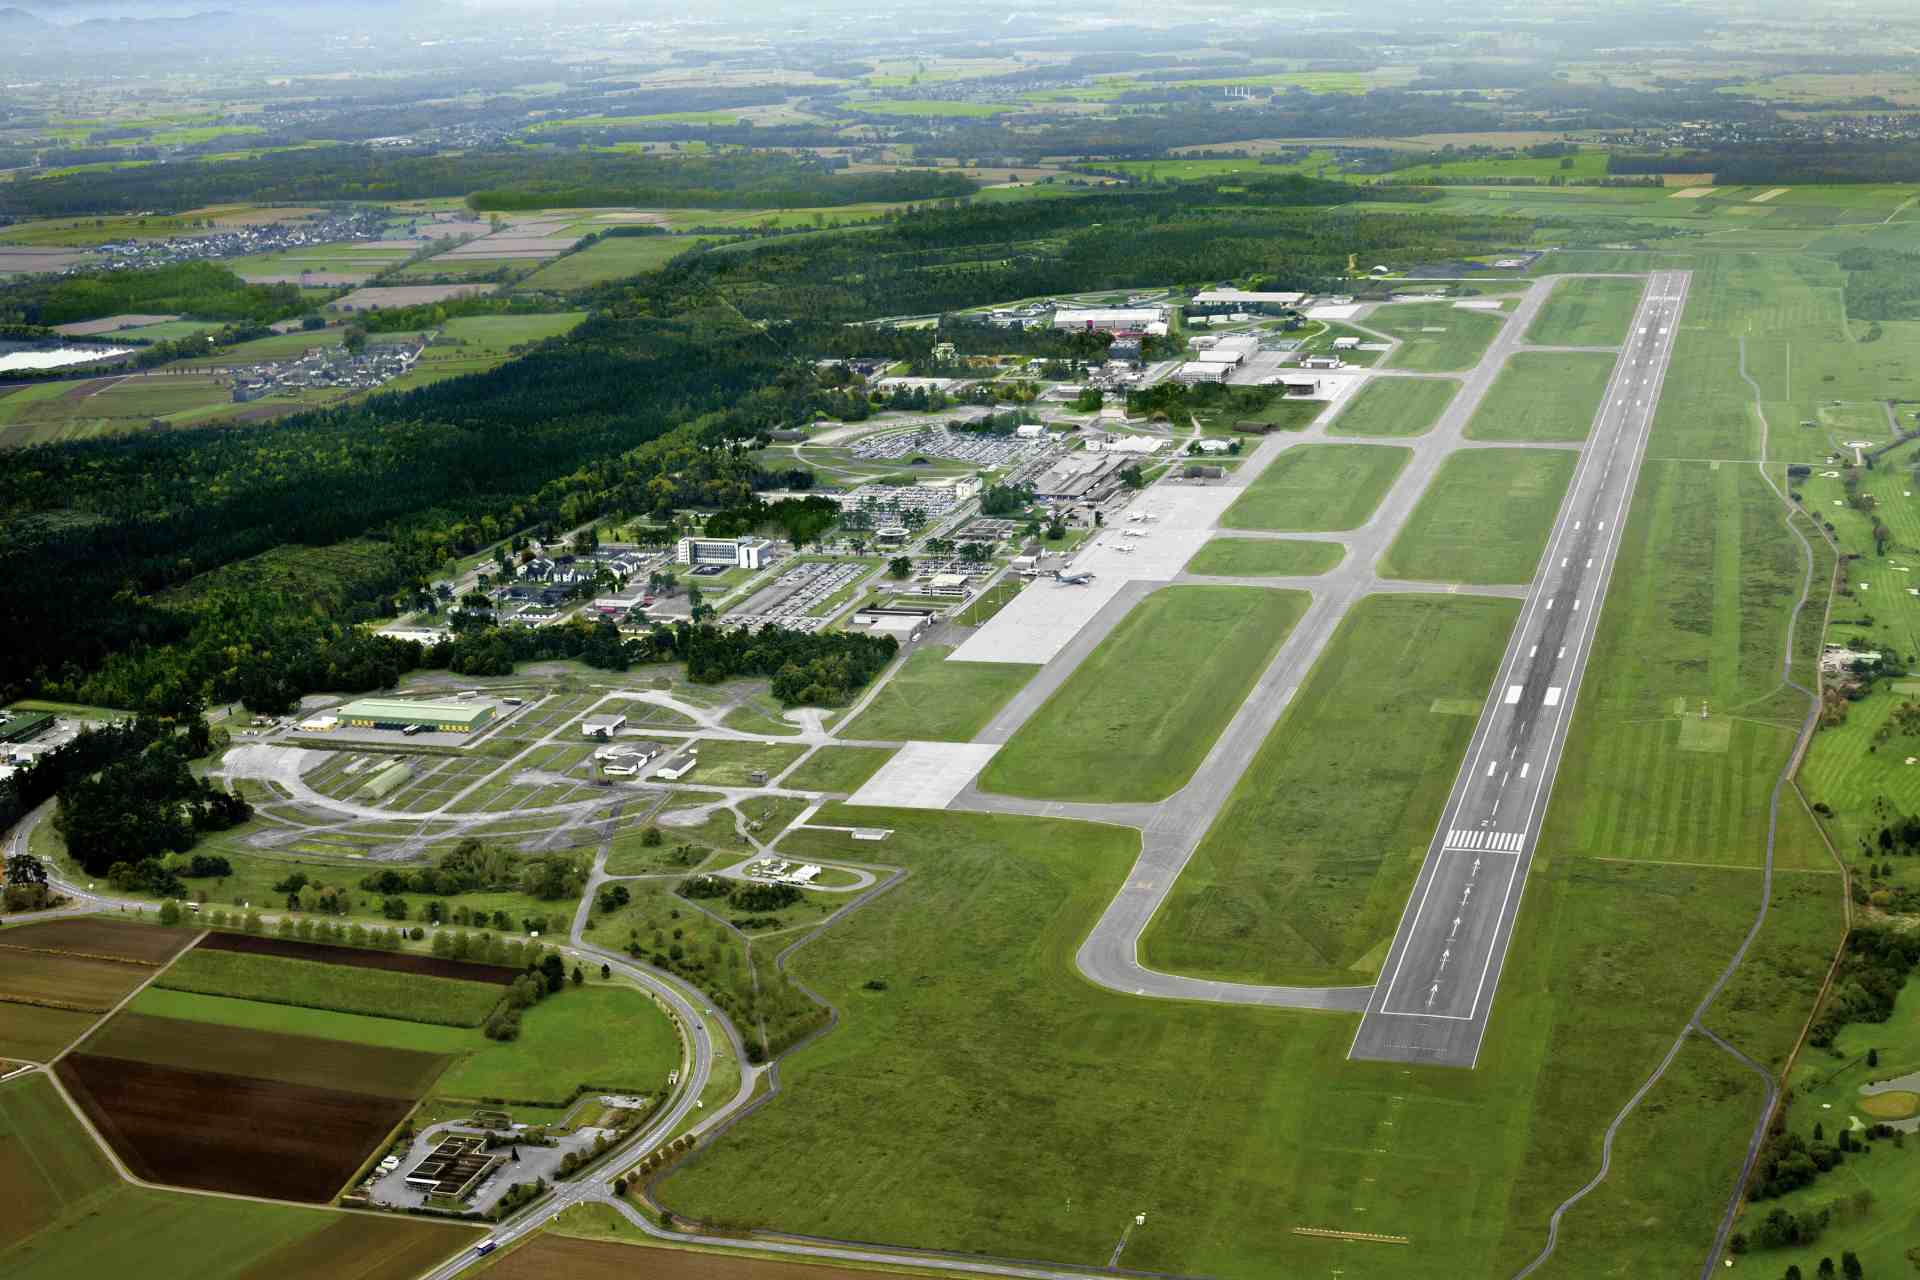 Flughafen Karlsruhe aus der Vogelperspektive